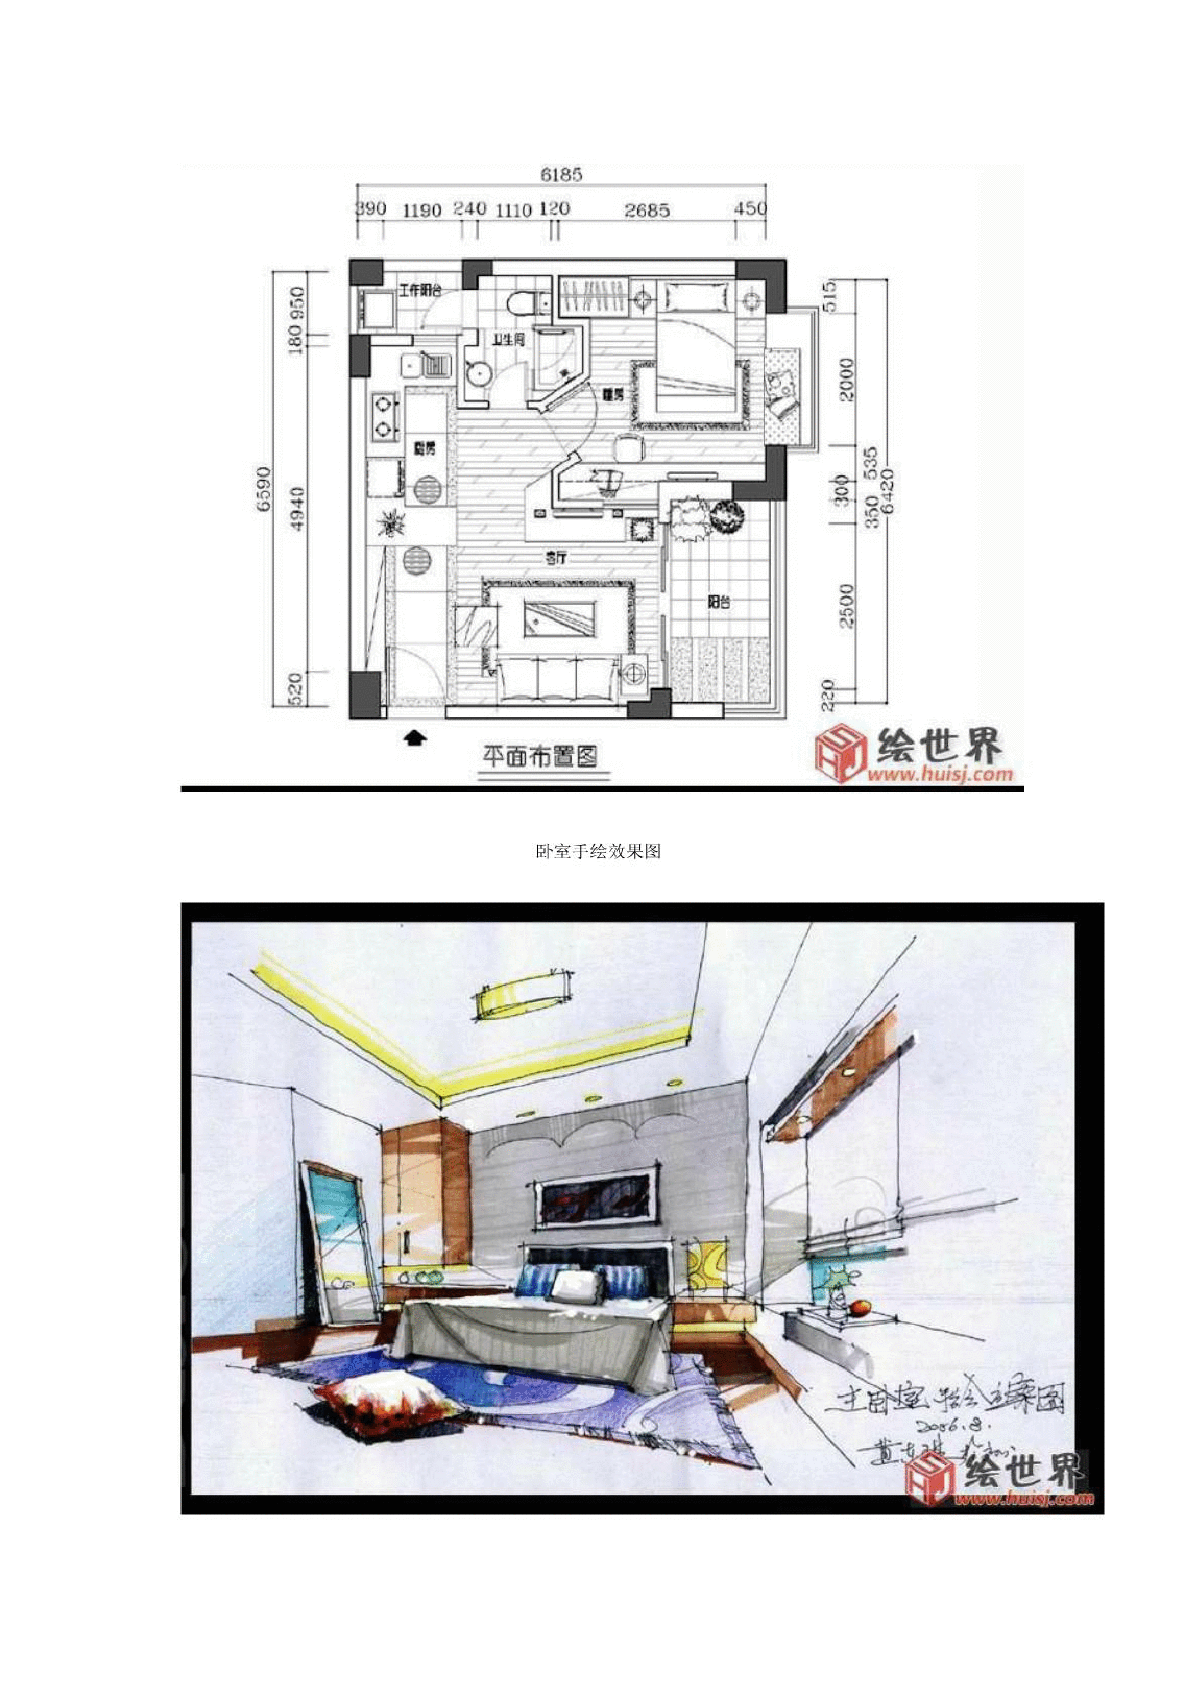 单身公寓设计效果图及解析方案-图二